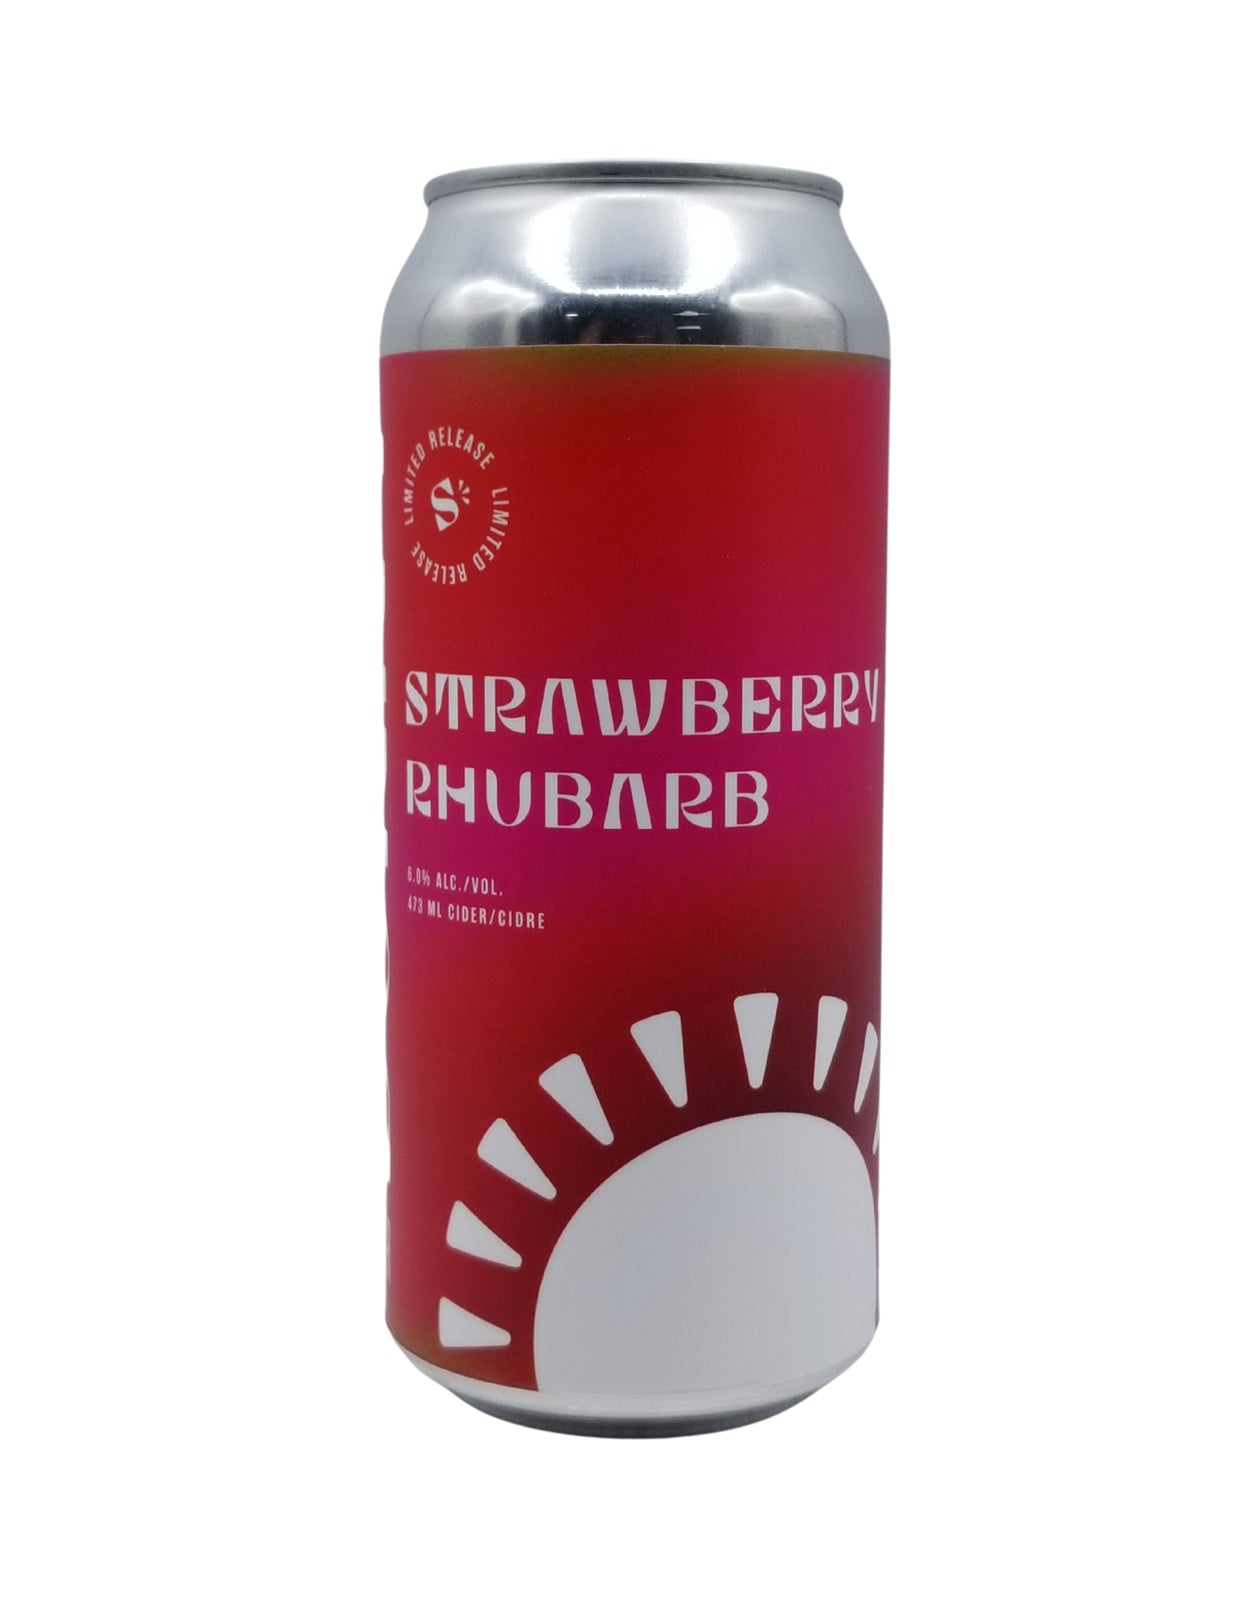 SunnyCider Strawberry Rhubarb Cider 473 ml - 4 Cans